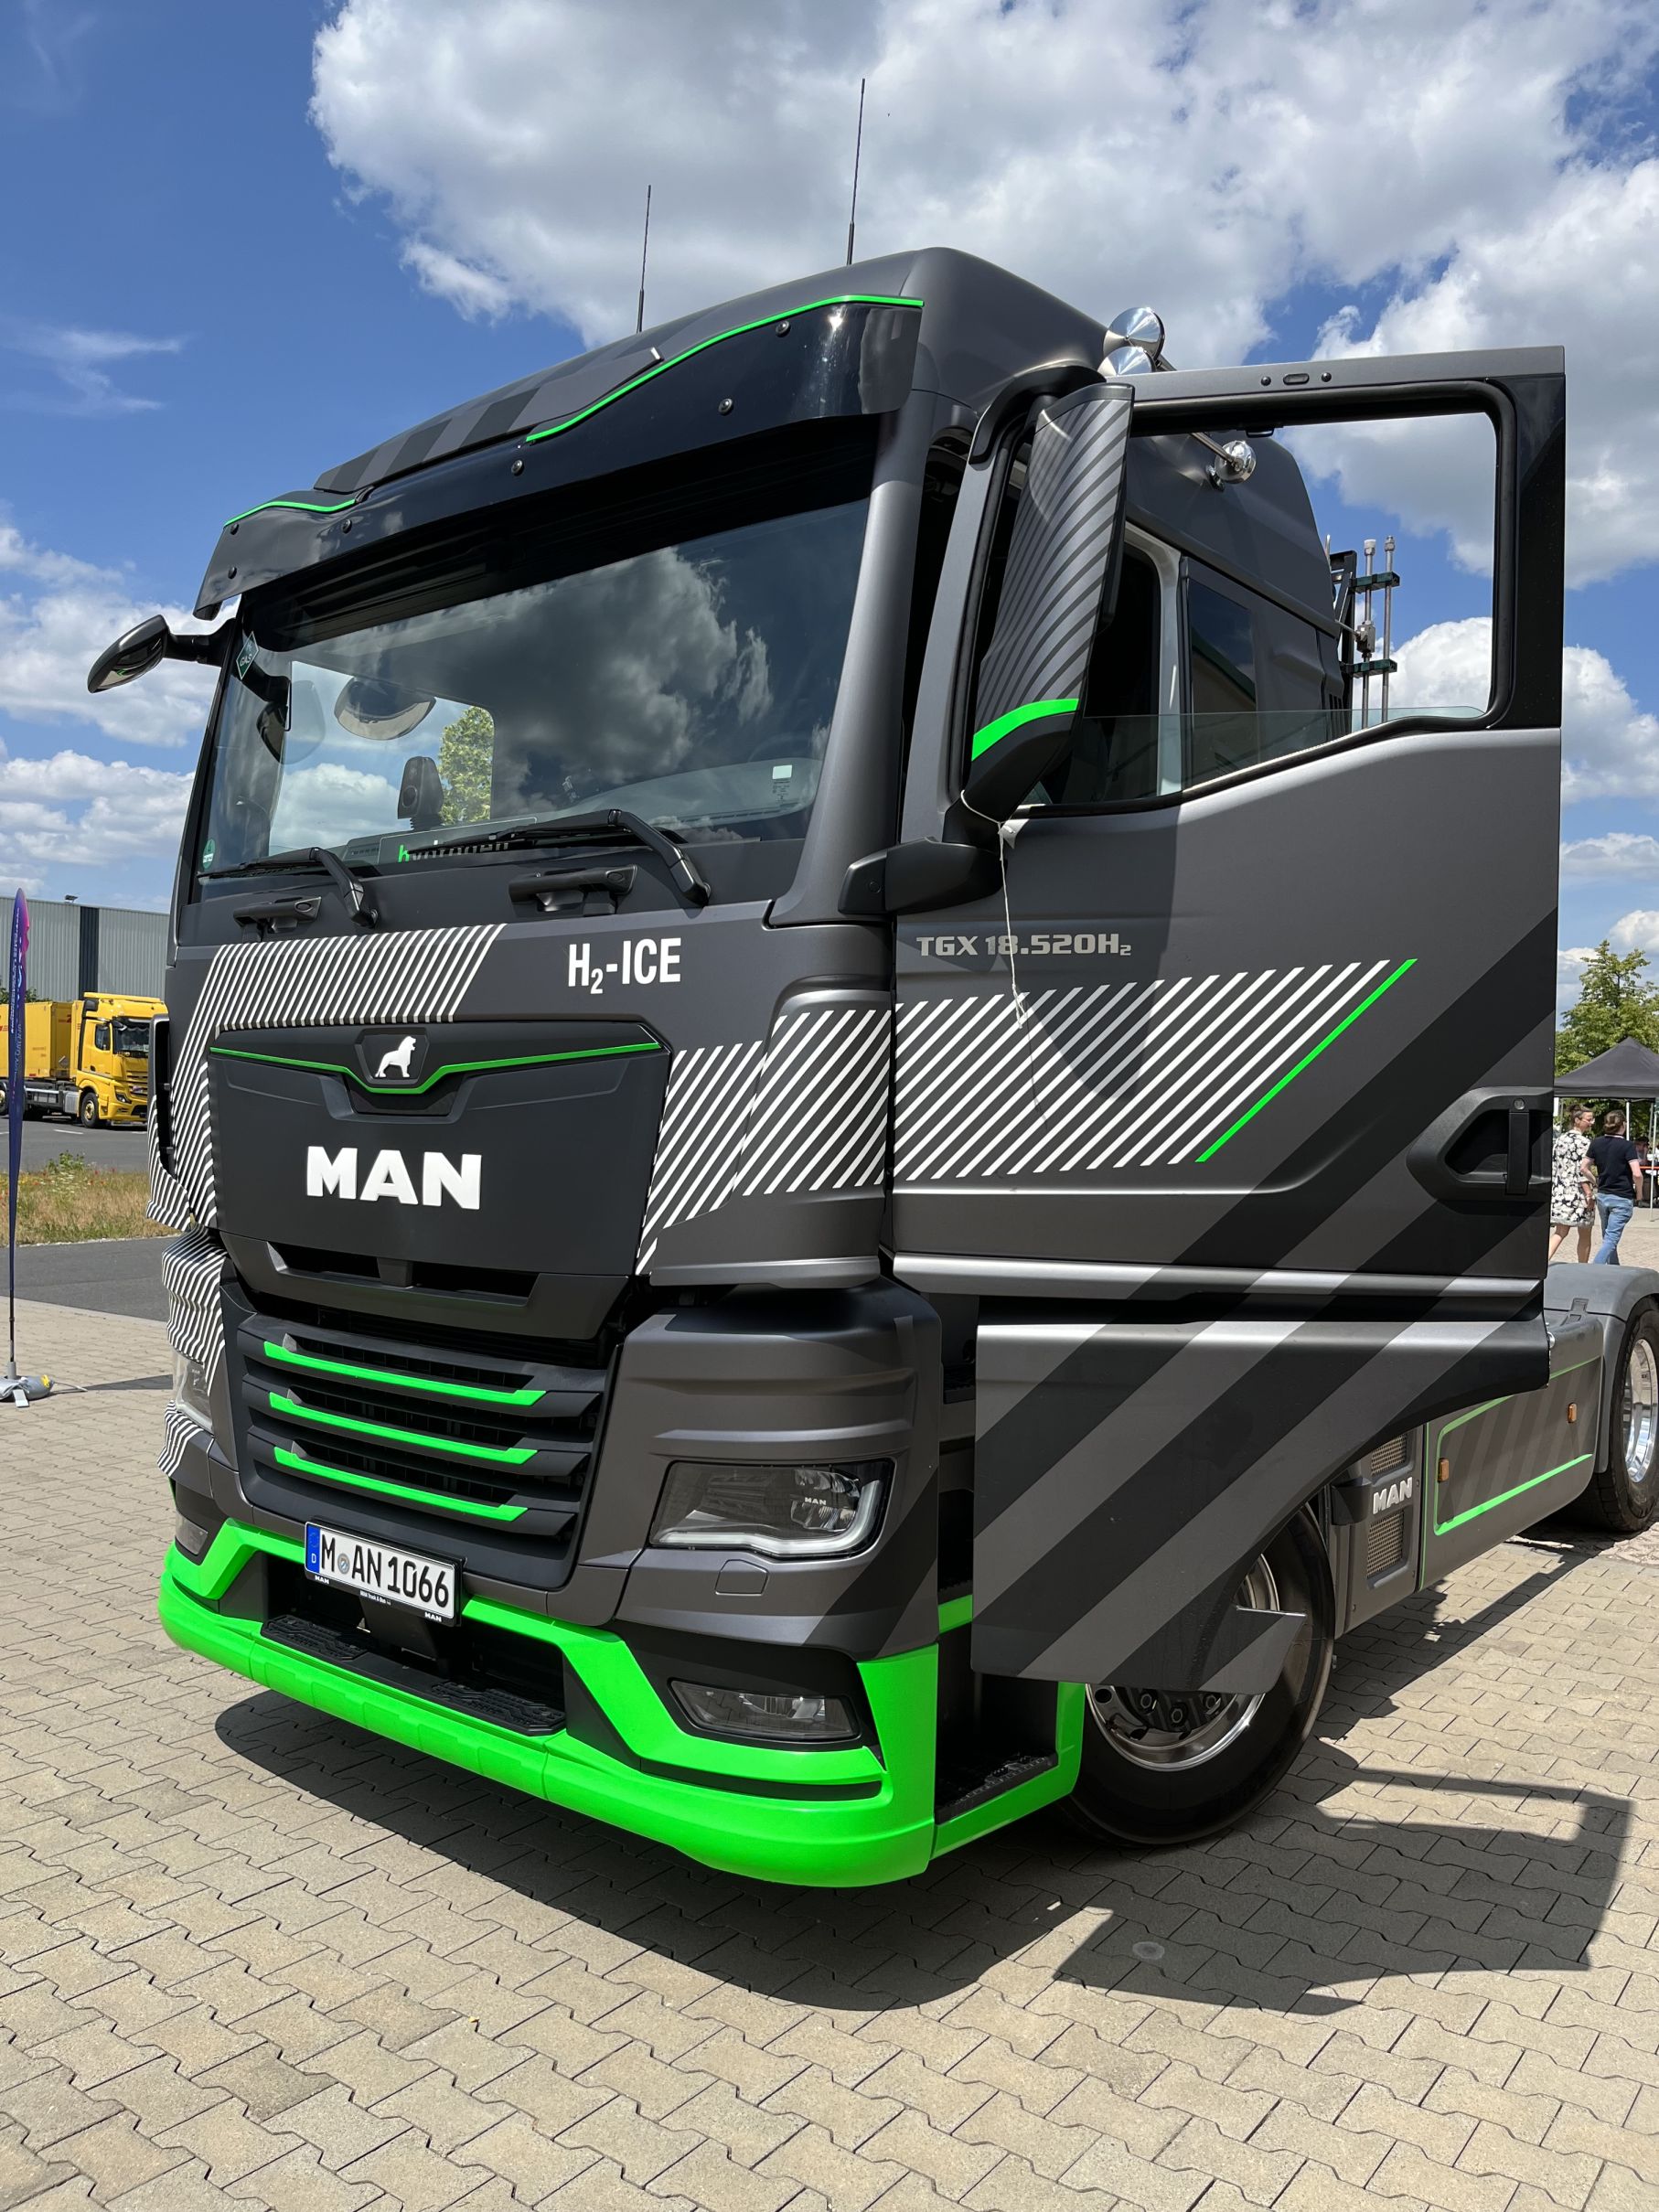 MAN H2-ICE Truck